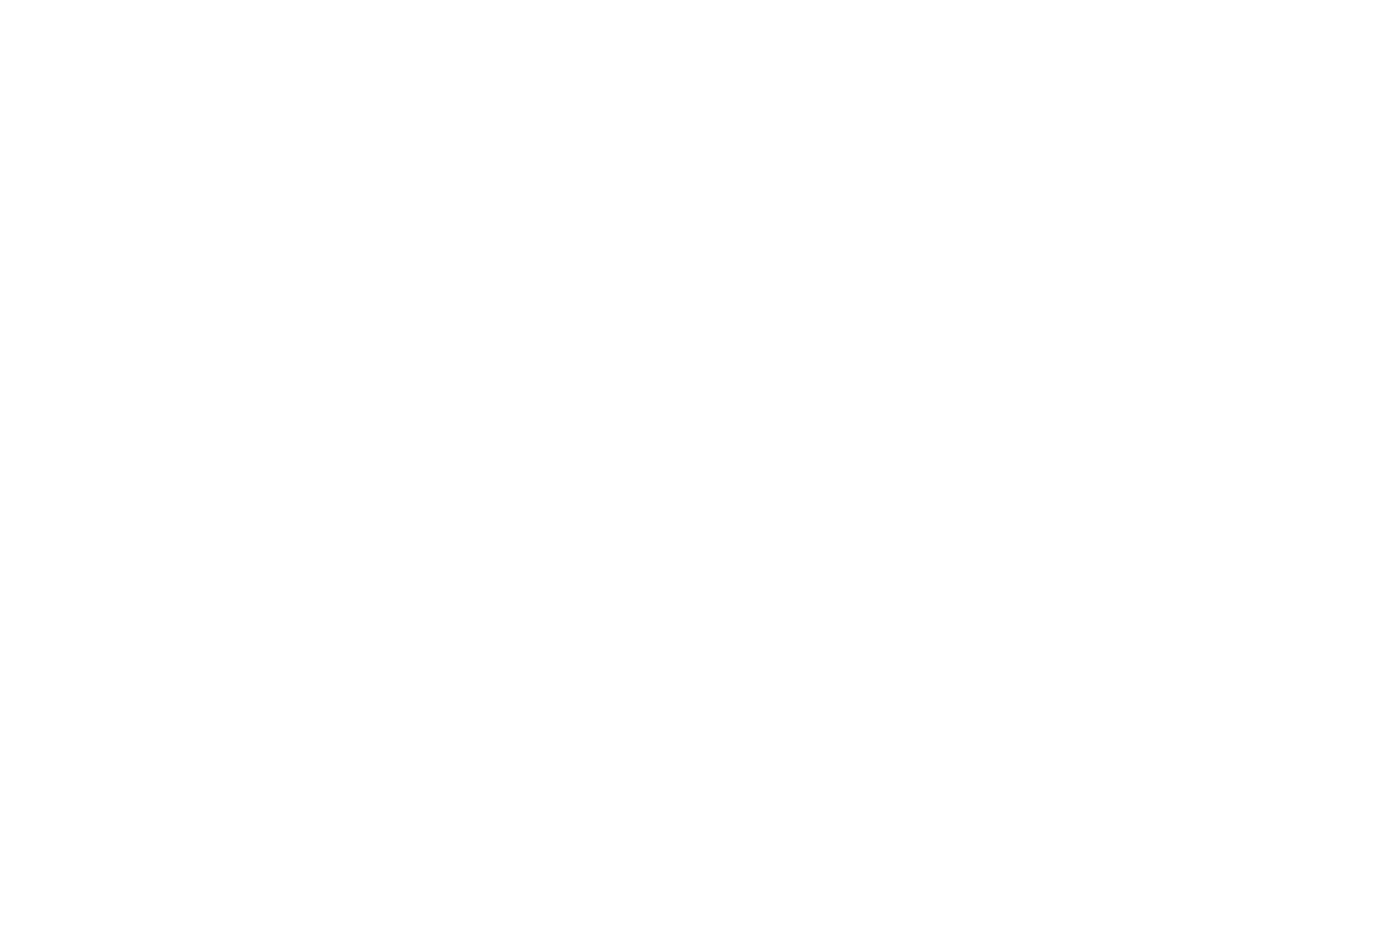 Slaying Metal Giants